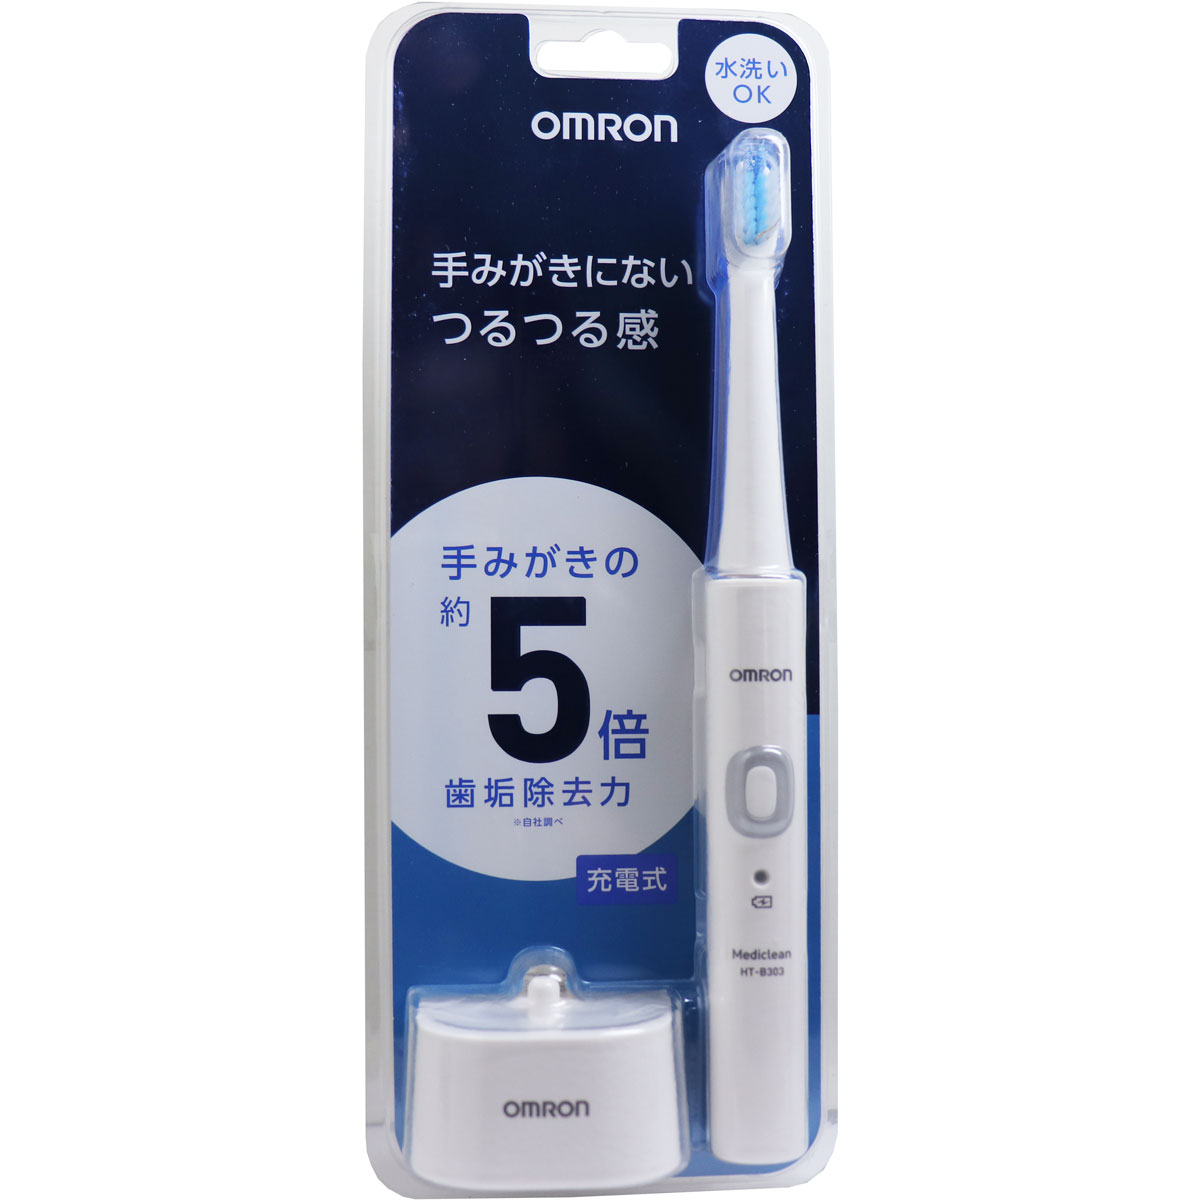 オムロン 音波式電動歯ブラシ HT-B303-W ホワイト